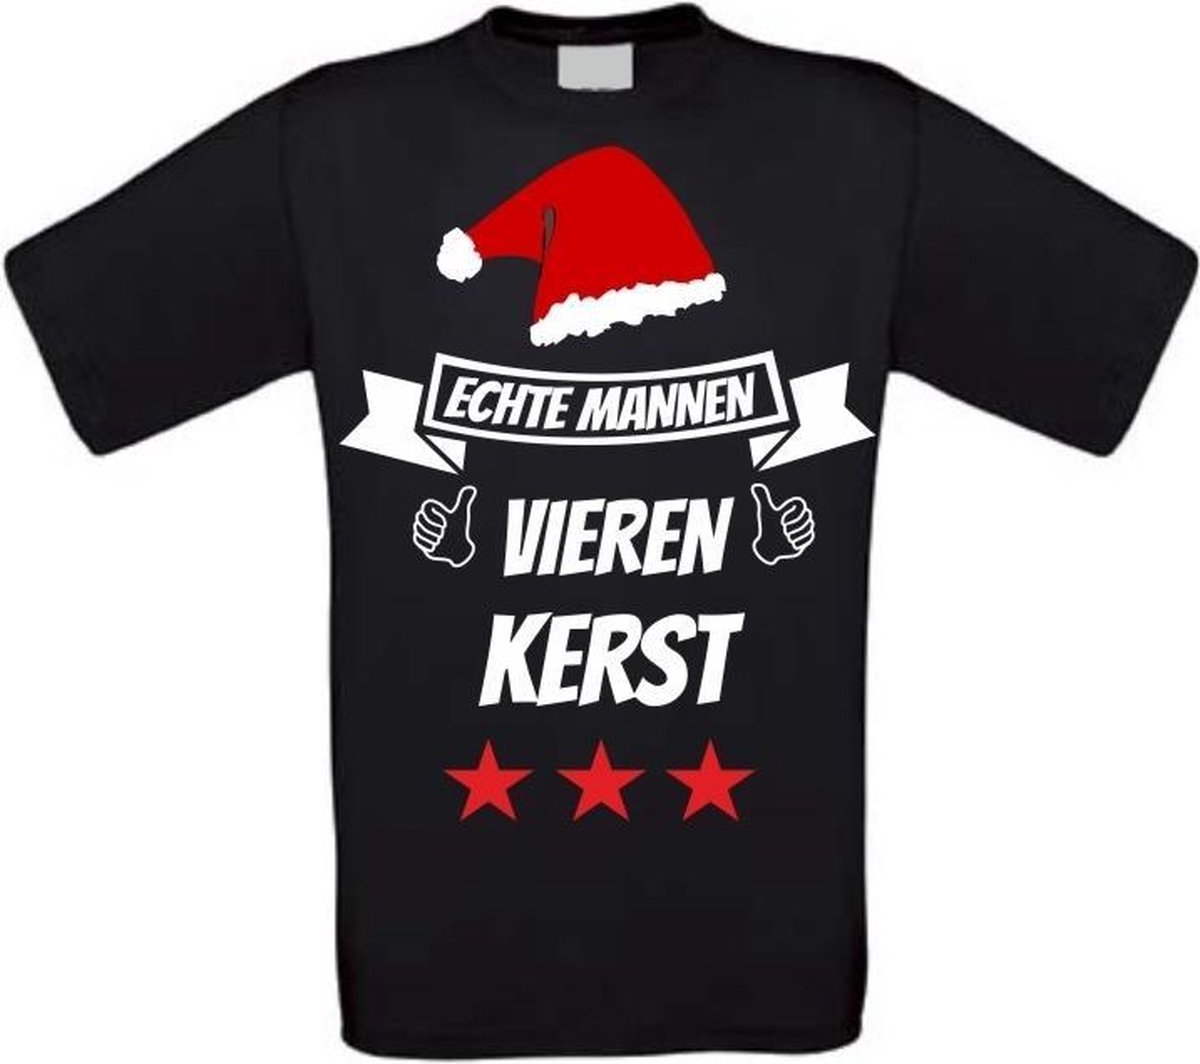 hoog Continu Schotel Echte mannen vieren kerst T-shirt maat L zwart | bol.com